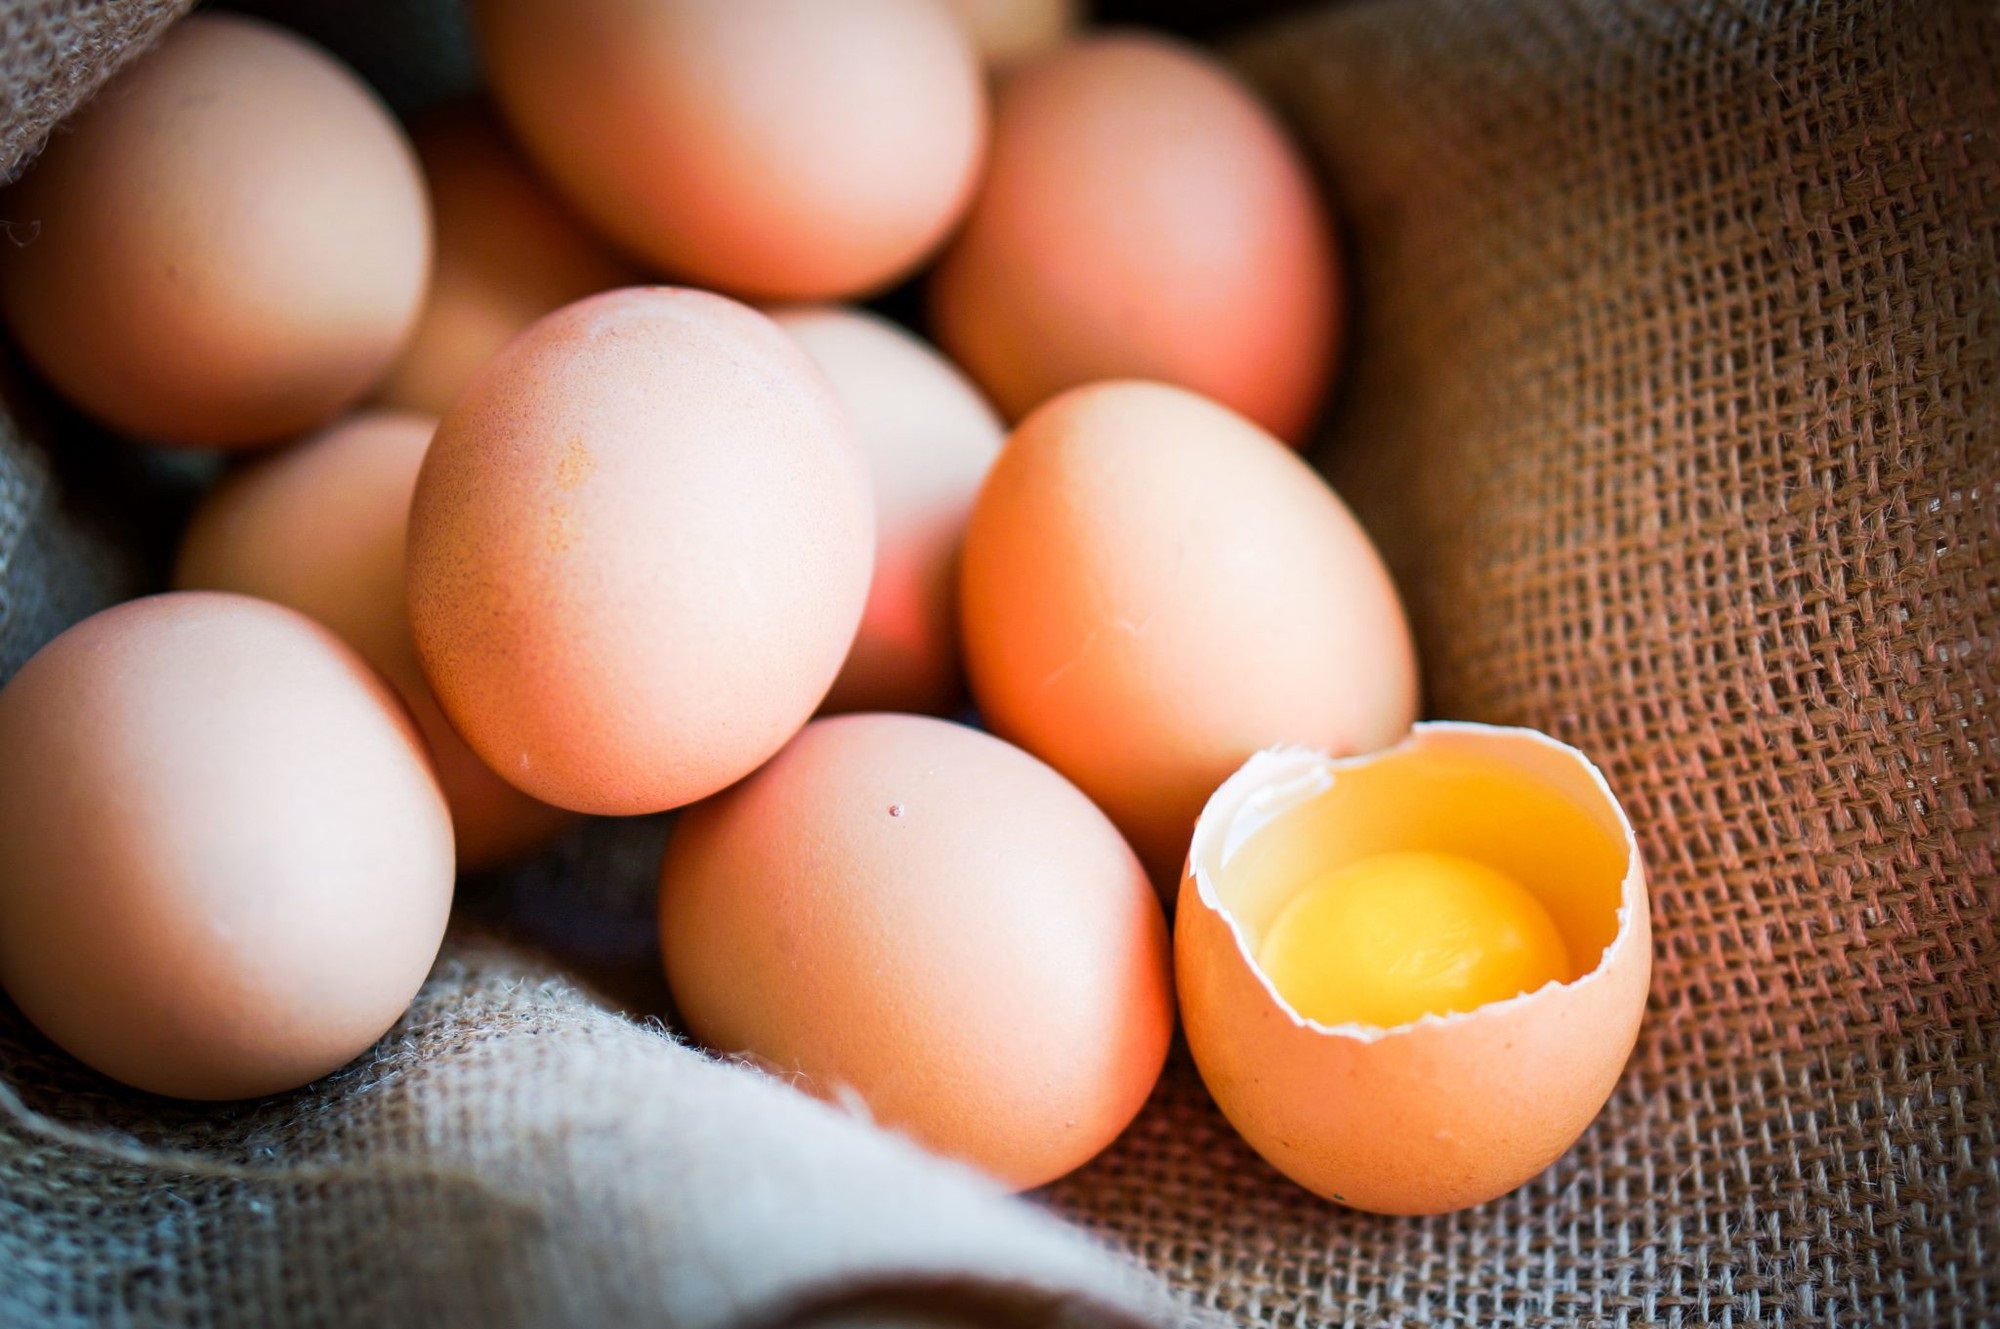 Đây là những lý do mà bạn nên bổ sung trứng vào thực đơn ăn kiêng của mình - Ảnh 5